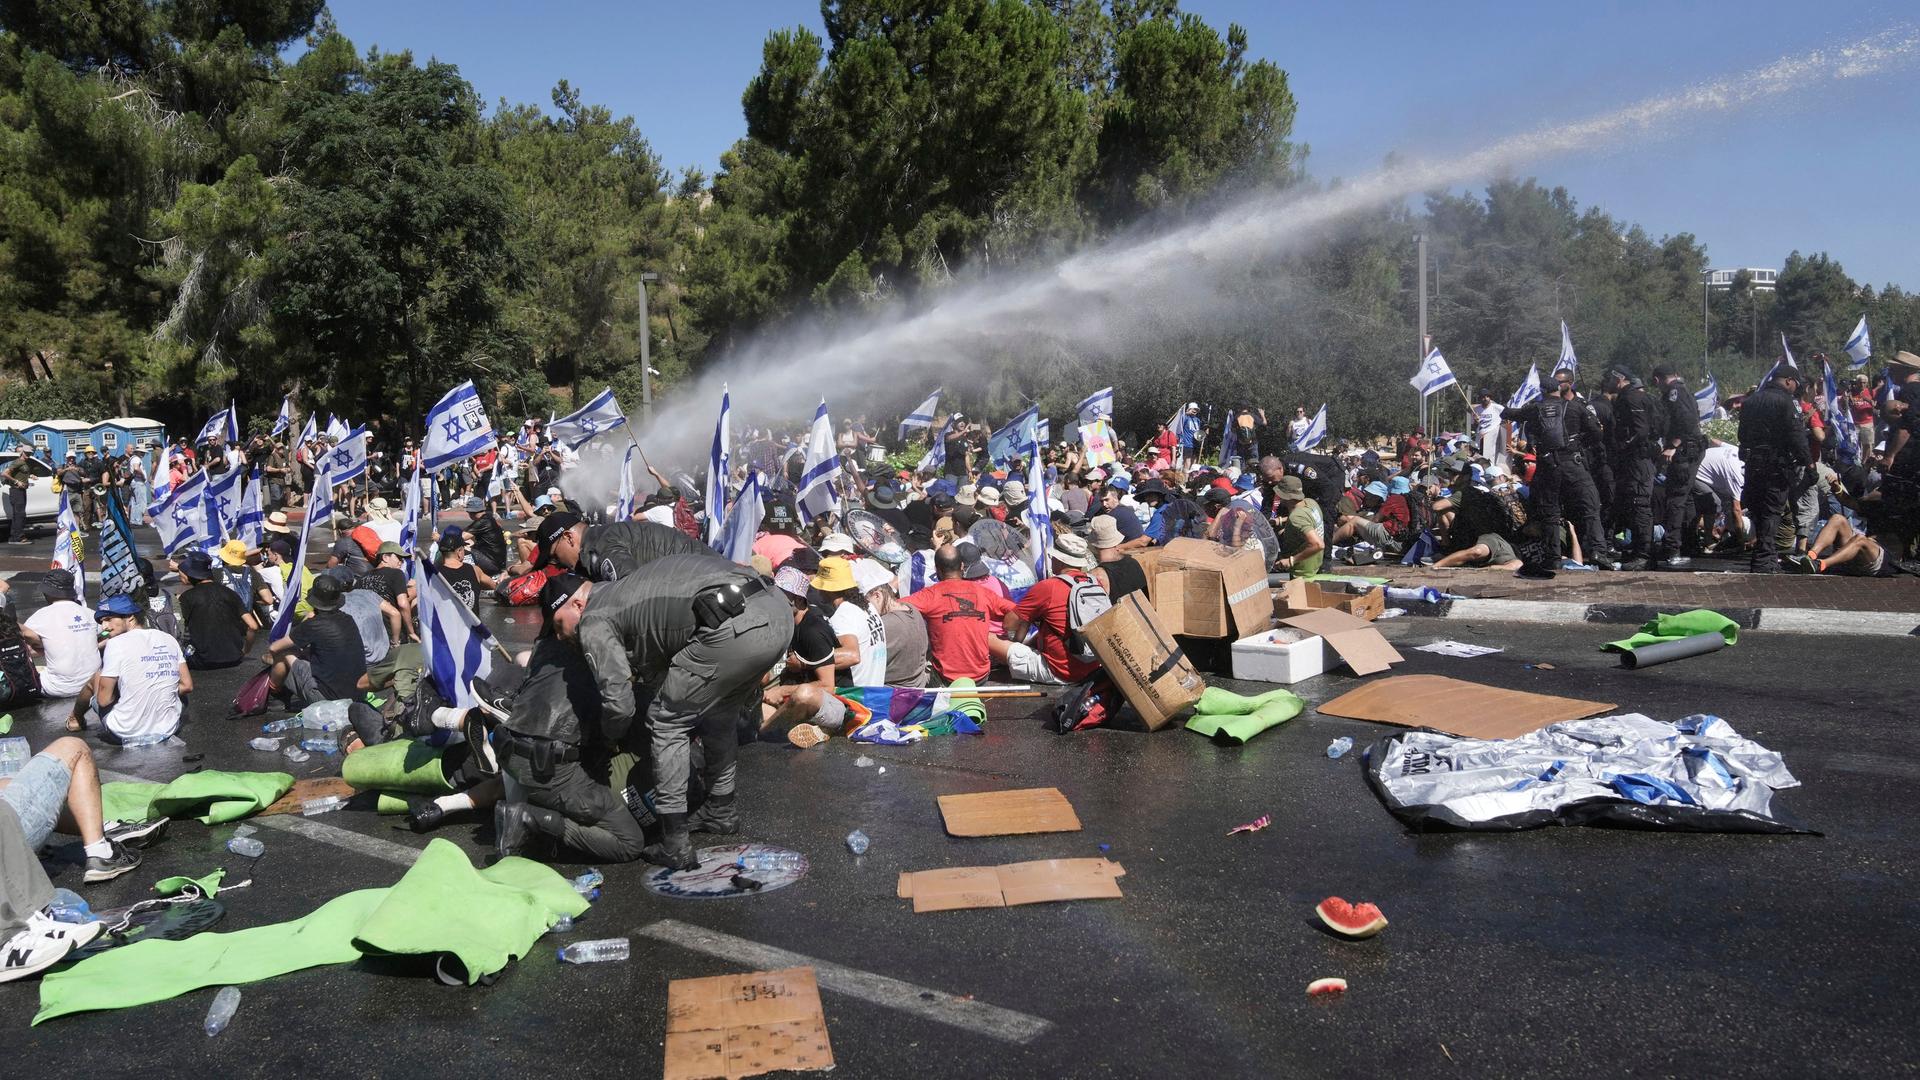 Isralische Polizisten versuchen in Jerusalem, Demonstranten, die auf dem Boden hocken, zu entfernen. Auch Wasserwerfer werden eingesetzt.